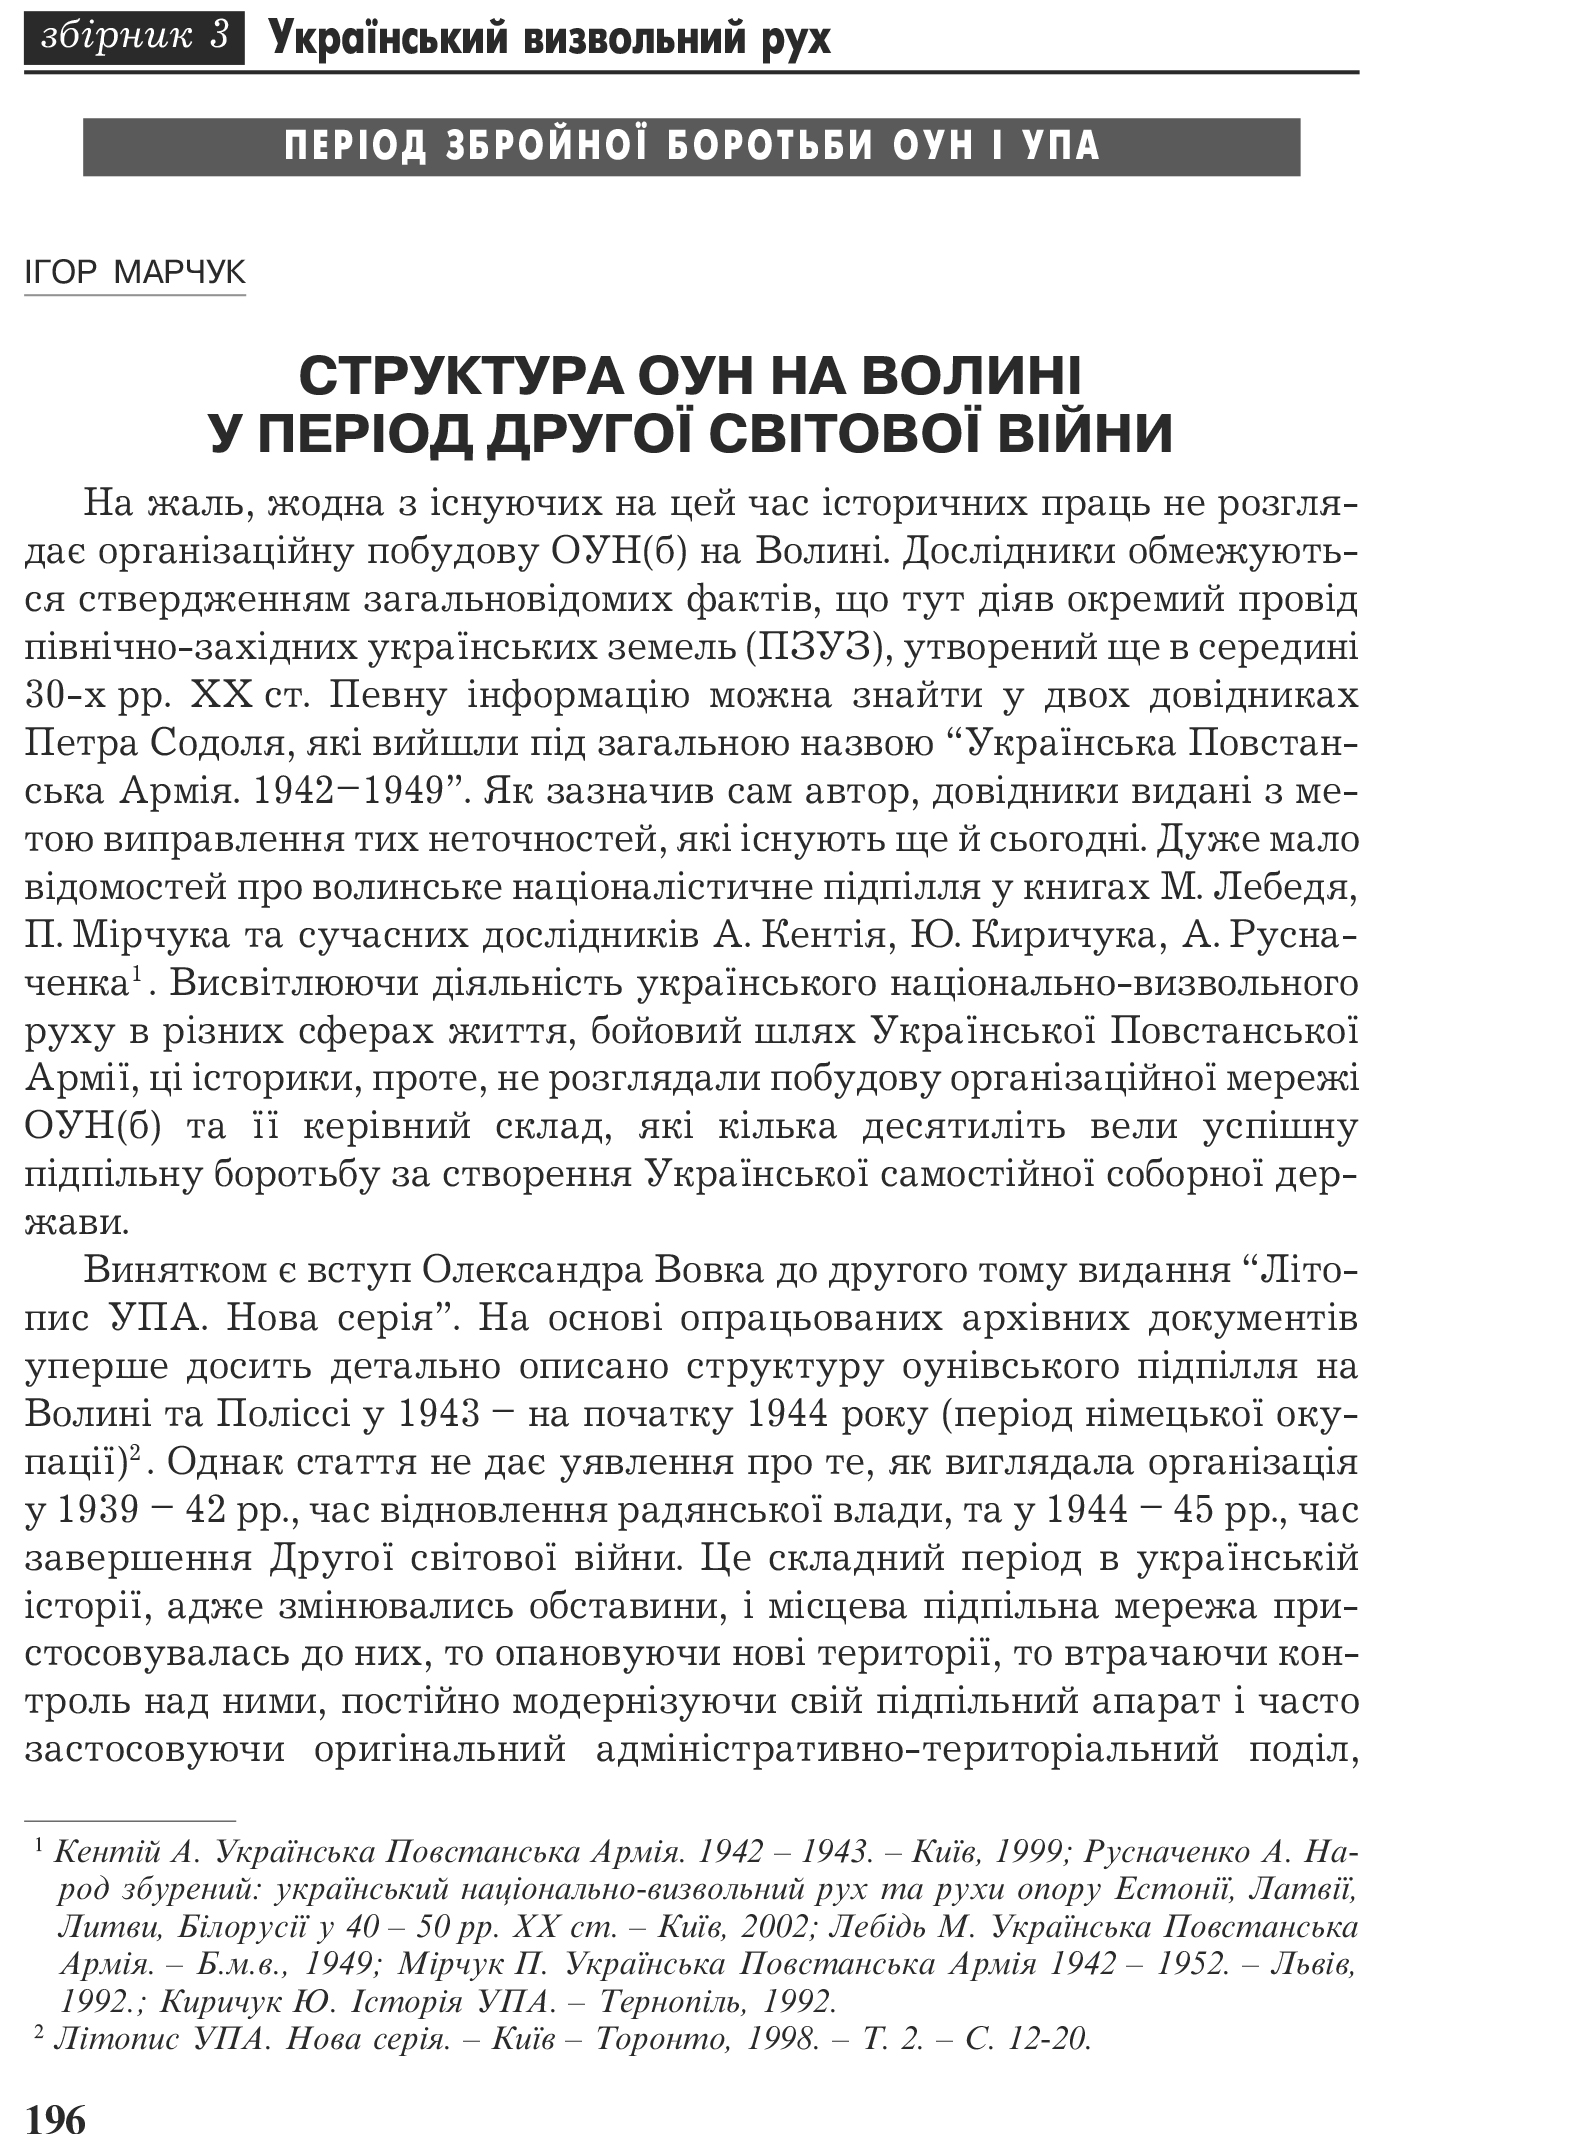 Український визвольний рух №3, ст. 196 - 204